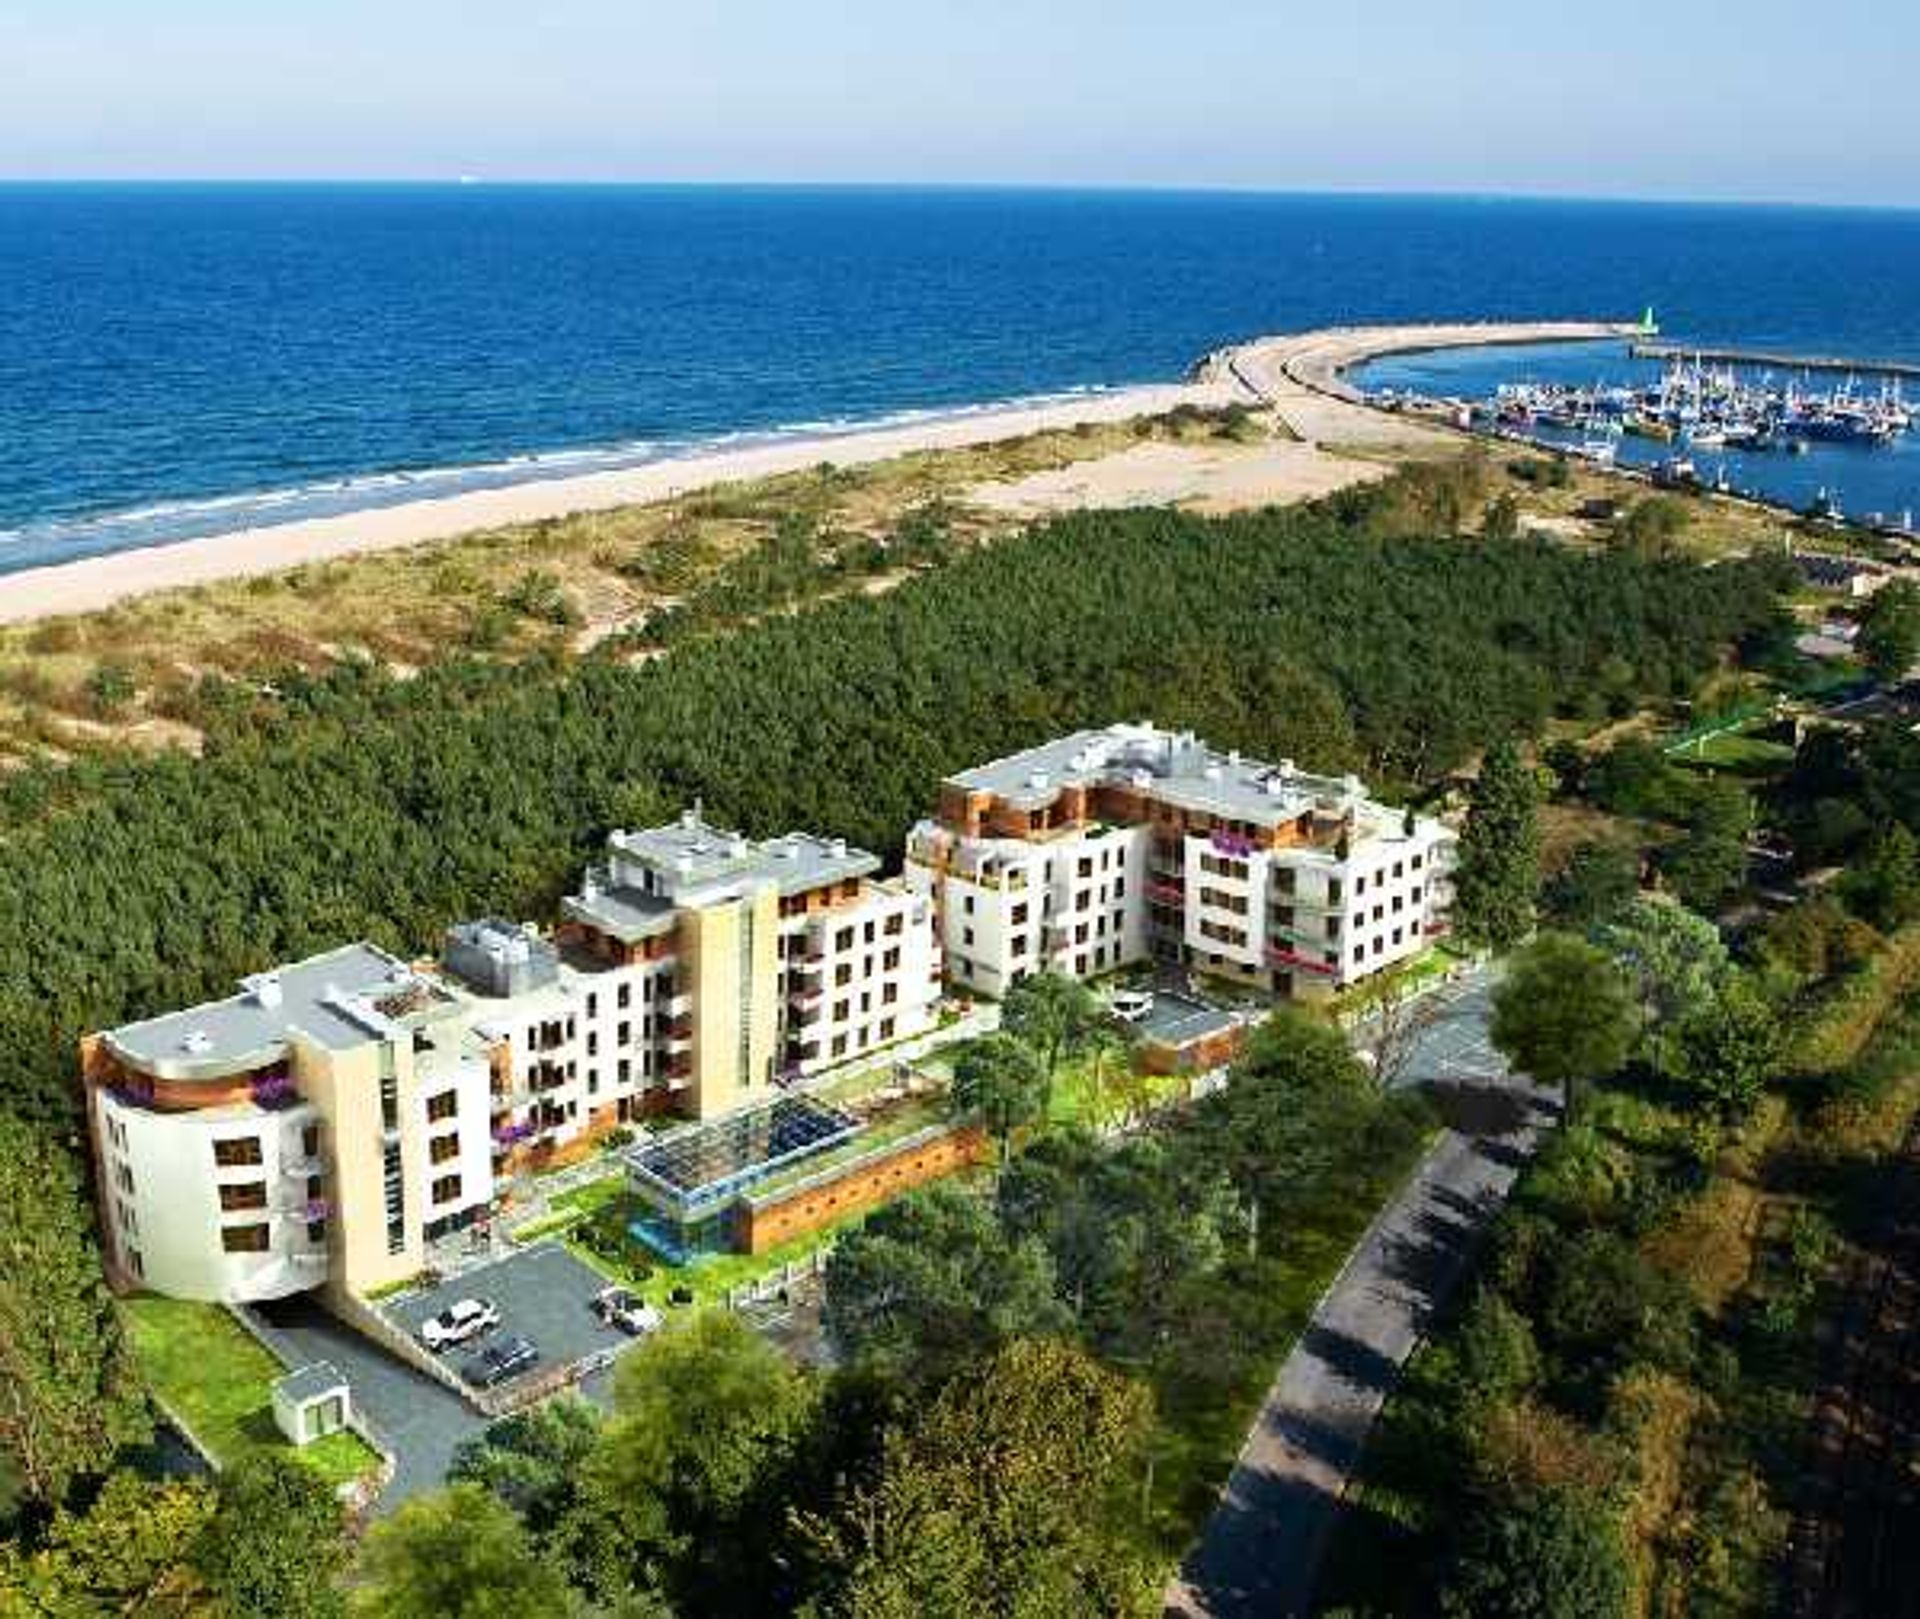  Rusza budowa ostatniego etapu Resortu Gwiazda Morza we Władysławowie